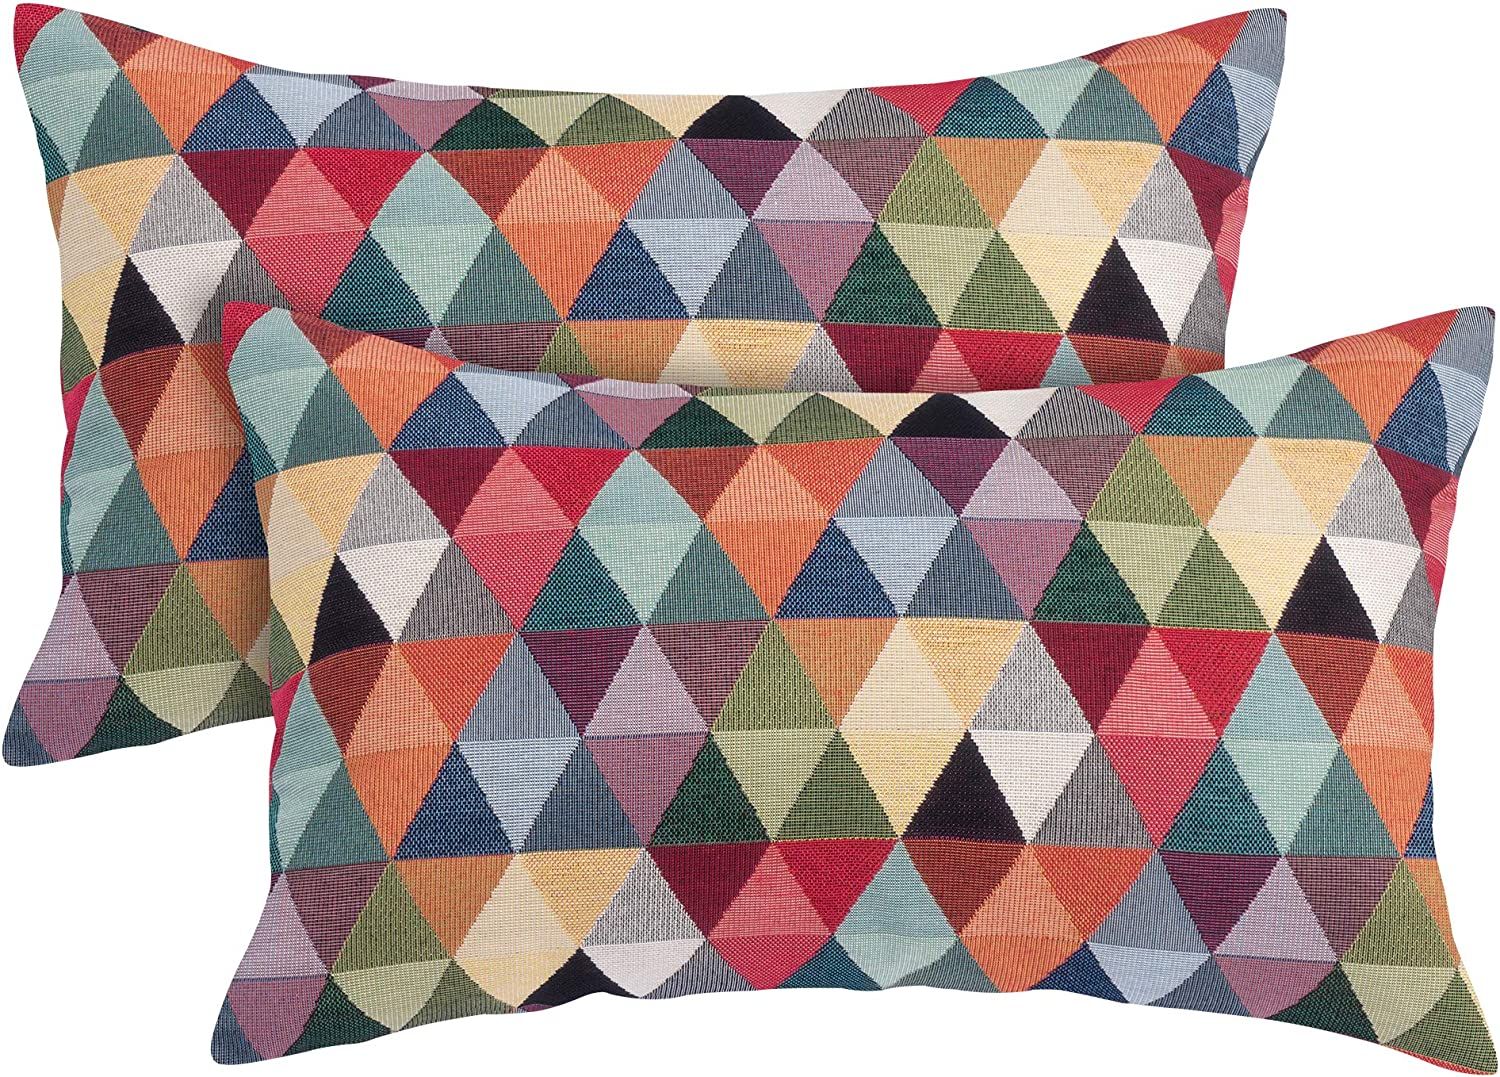 Set of 2 Sofa Cushions Press profile homify Mais espaços